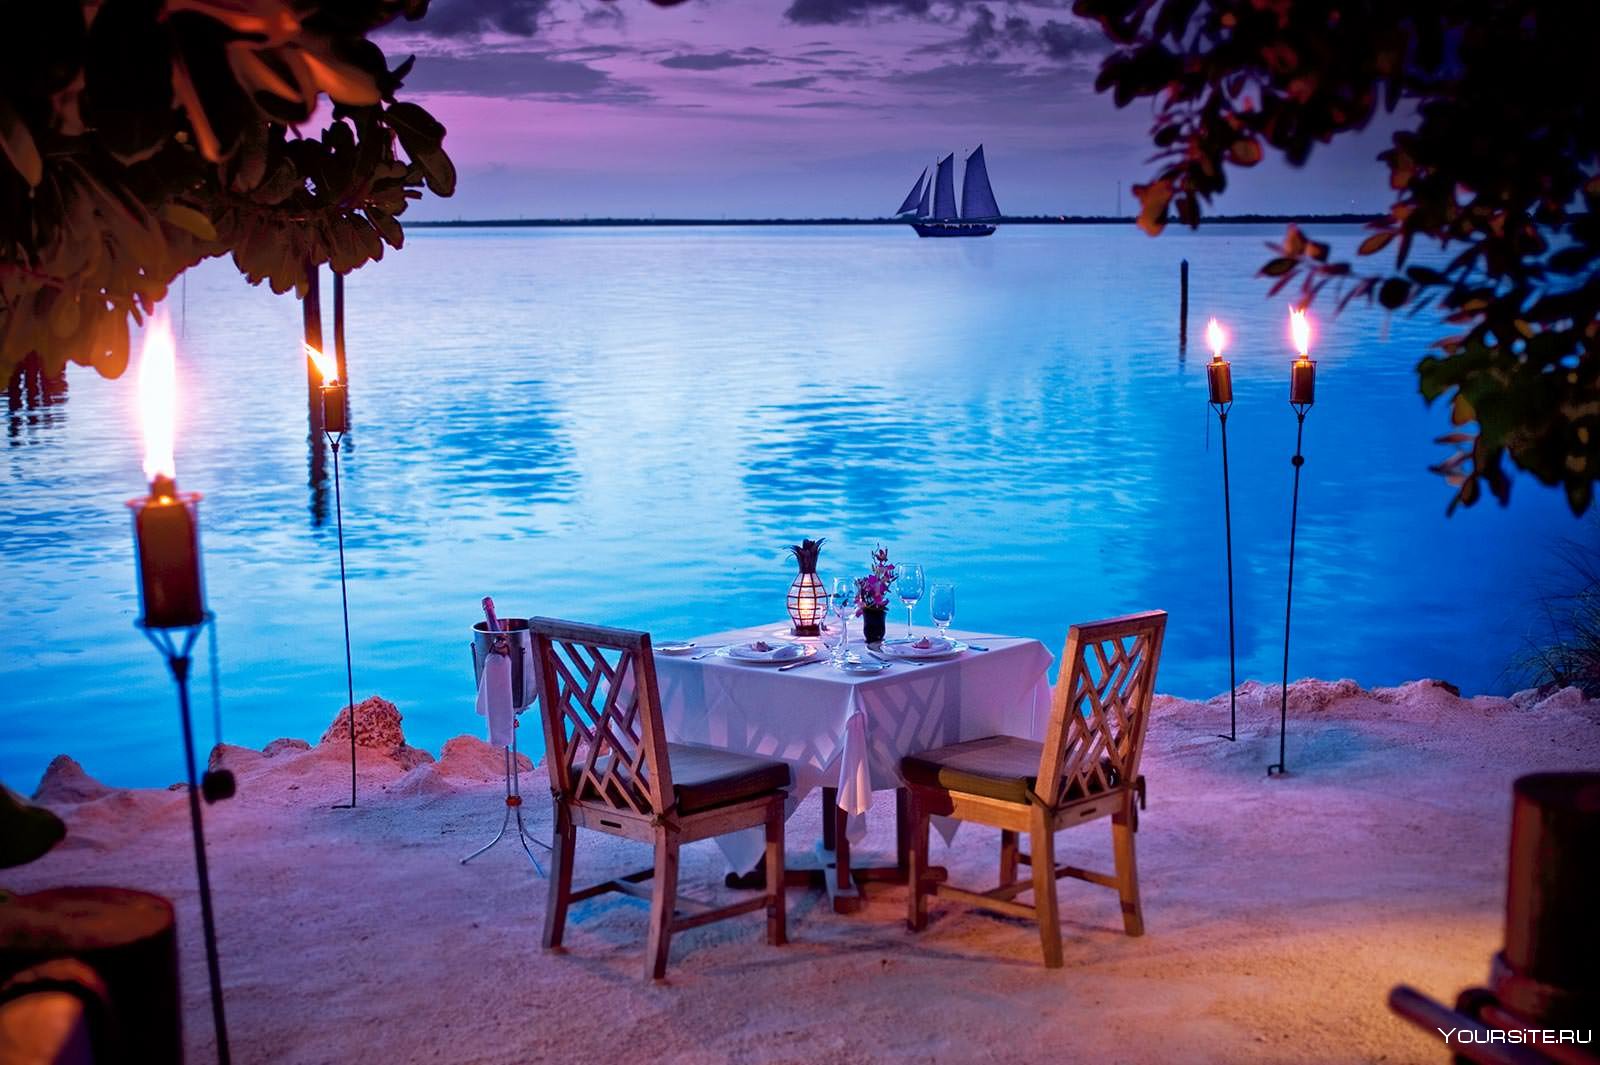 Видео про вечер. Романтические места. Ужин на берегу моря. Столик с видом на море. Романтичный вечер.